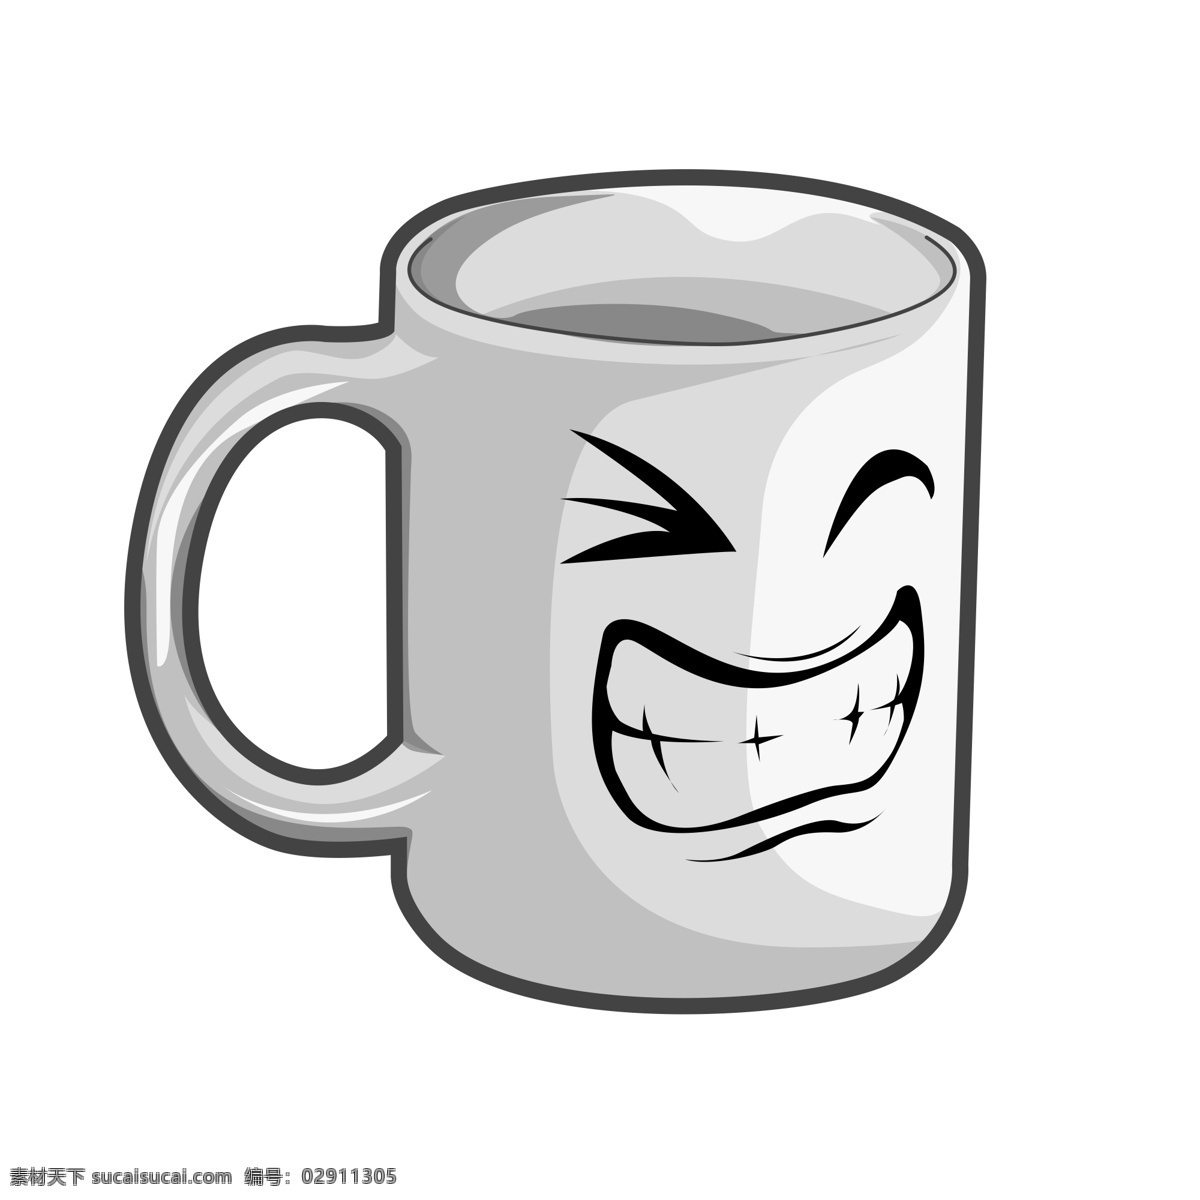 趣味 表情 马克杯 水杯 商用 茶杯 生活用品 杯子 卡通杯